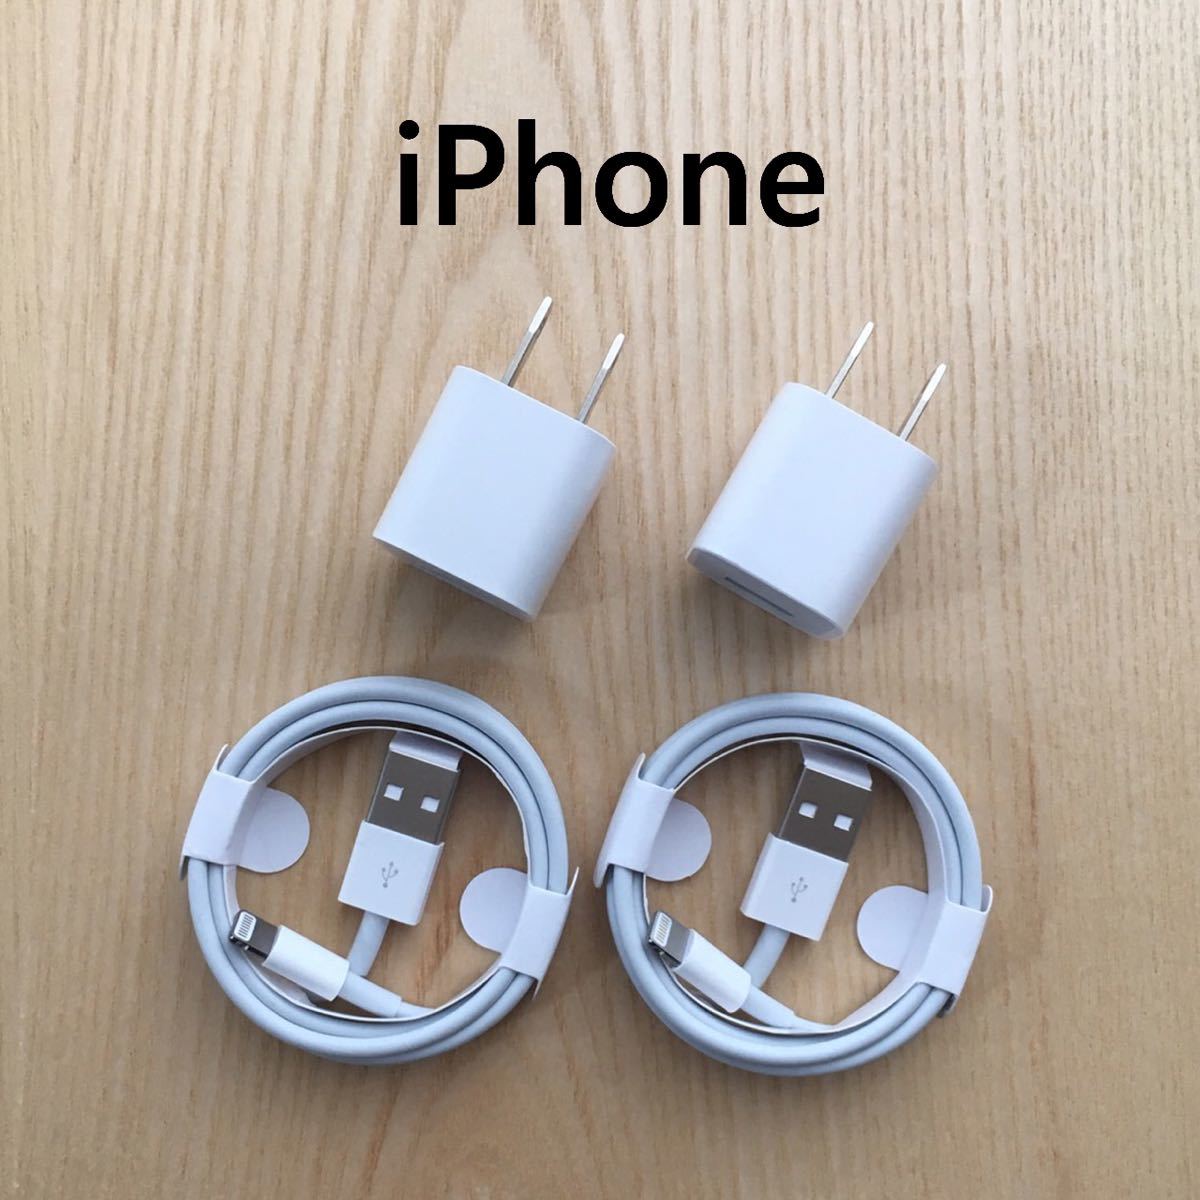 iPhone 充電器 充電ケーブル コード lightning cable ライトニングケーブル 4点セット